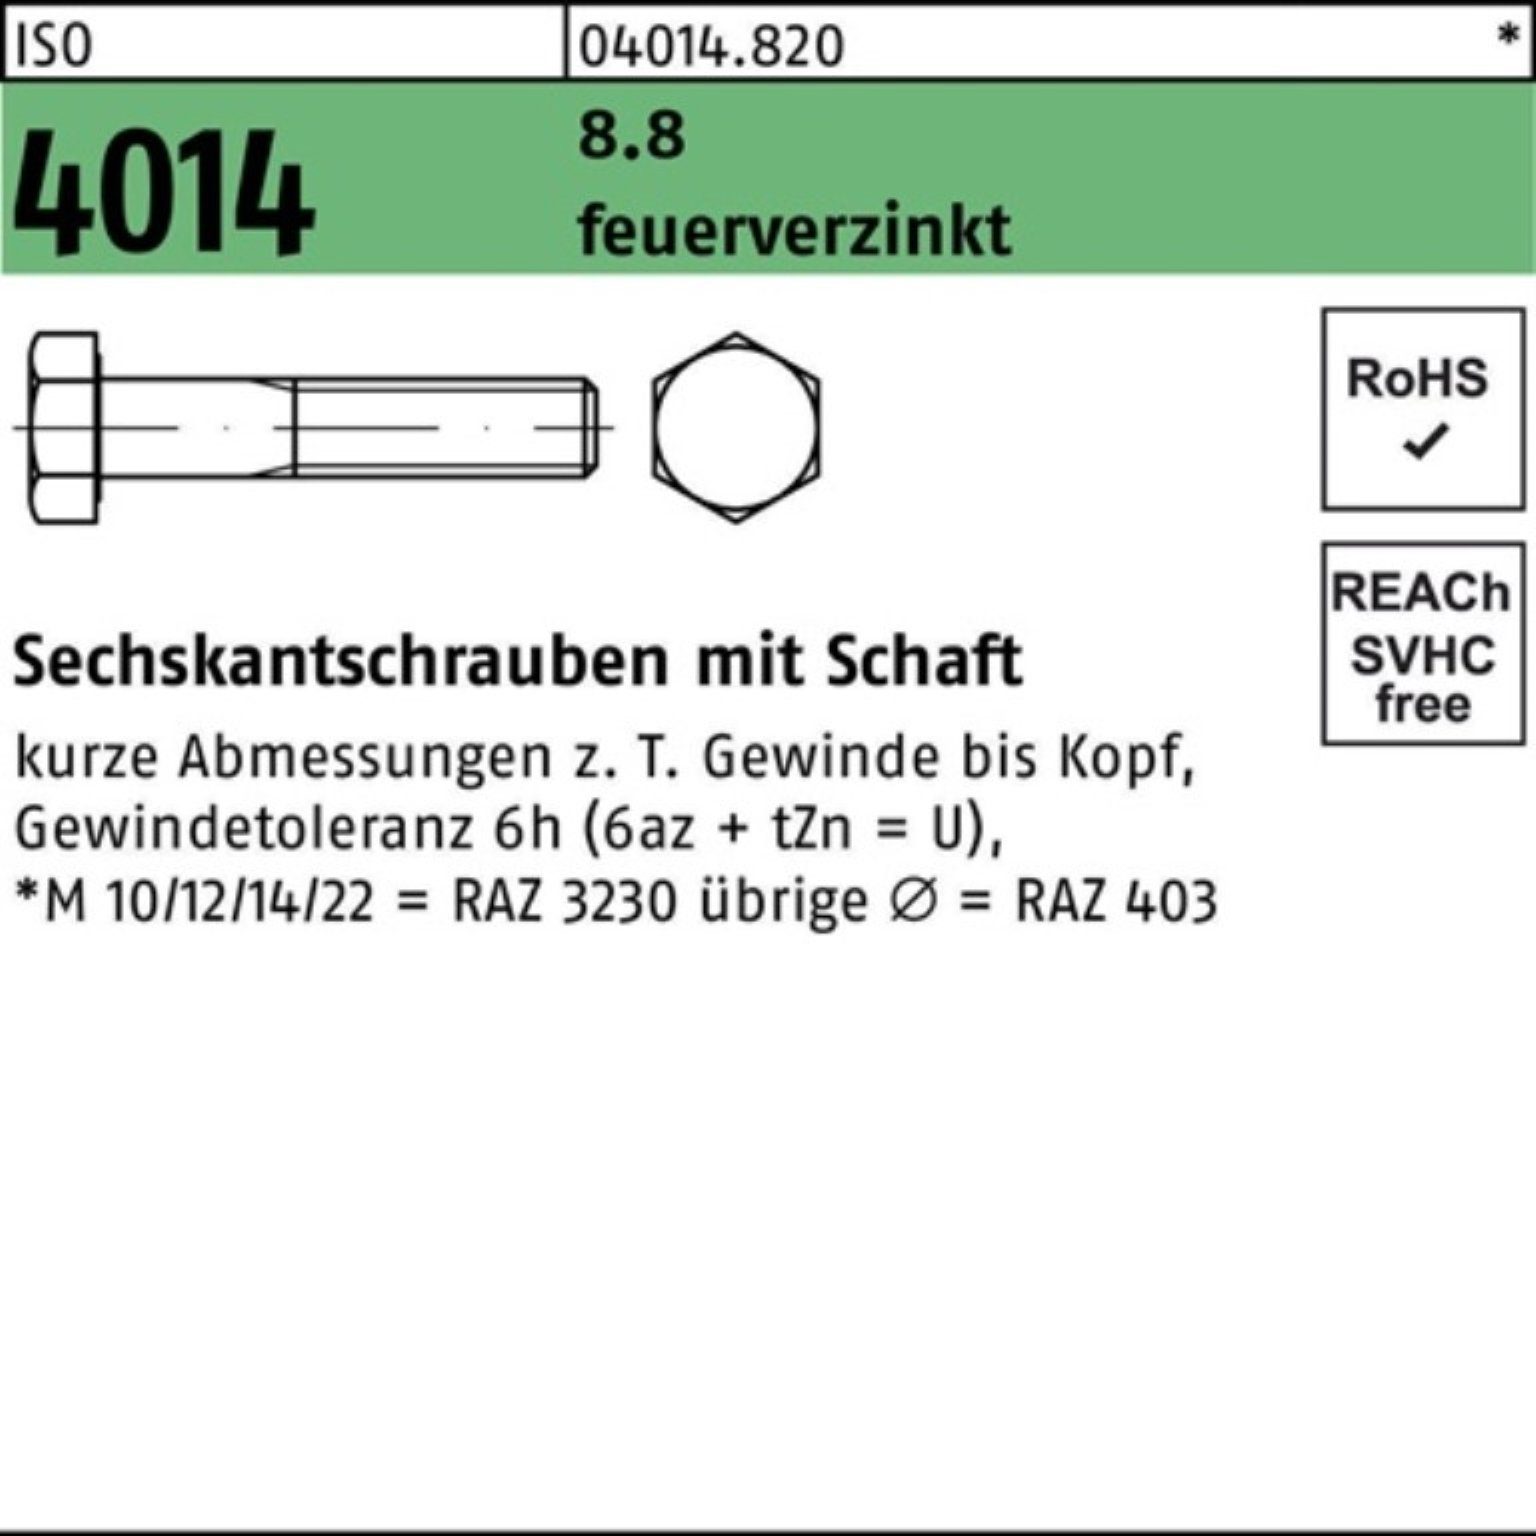 Sechskantschraube 1 8.8 Pack ISO feuerverz. 4014 Sechskantschraube 160 M24x Schaft Bufab 100er